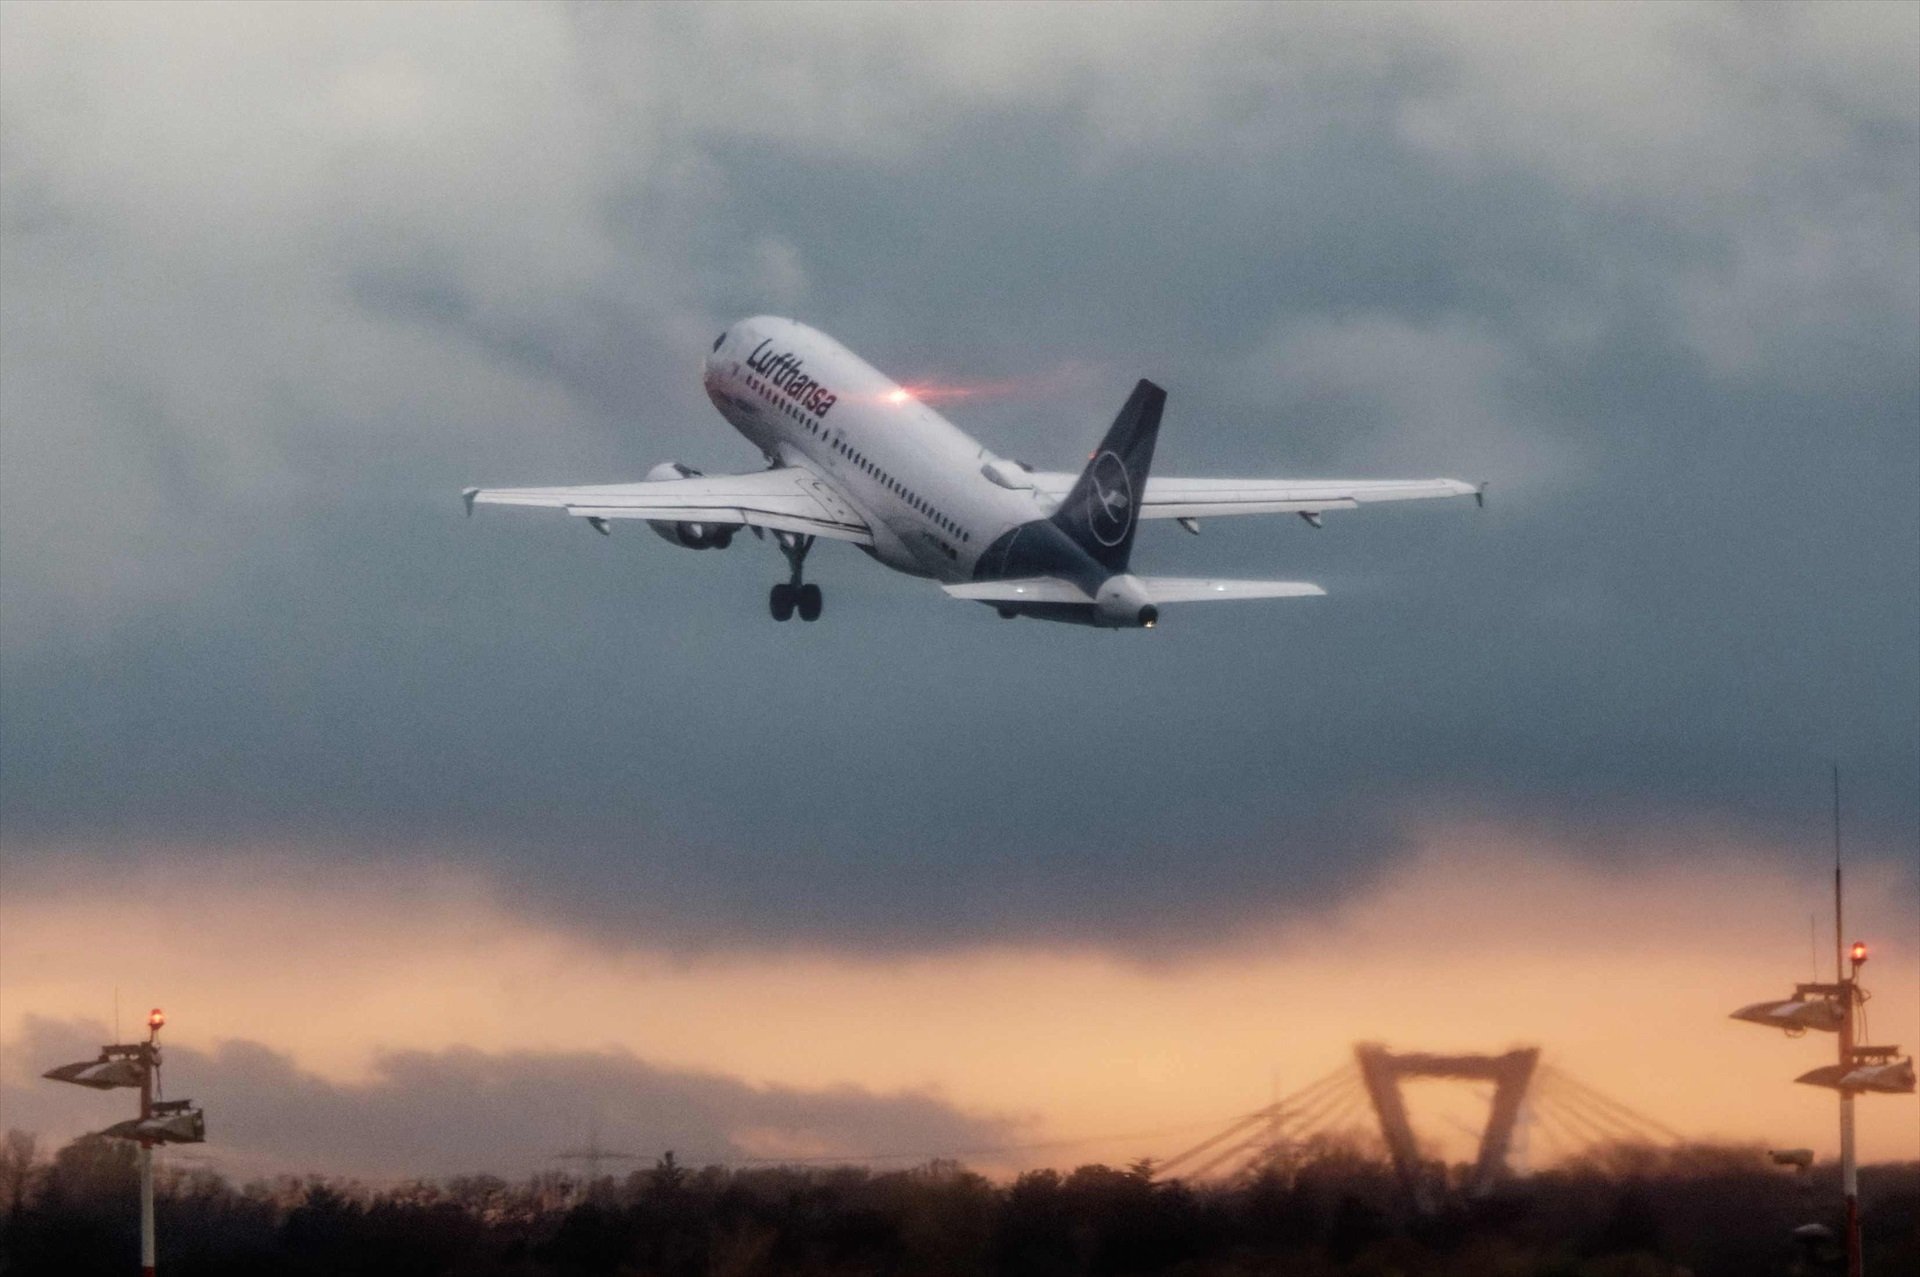 La tormenta en Barcelona obliga a desviar más de 20 vuelos del aeropuerto del Prat